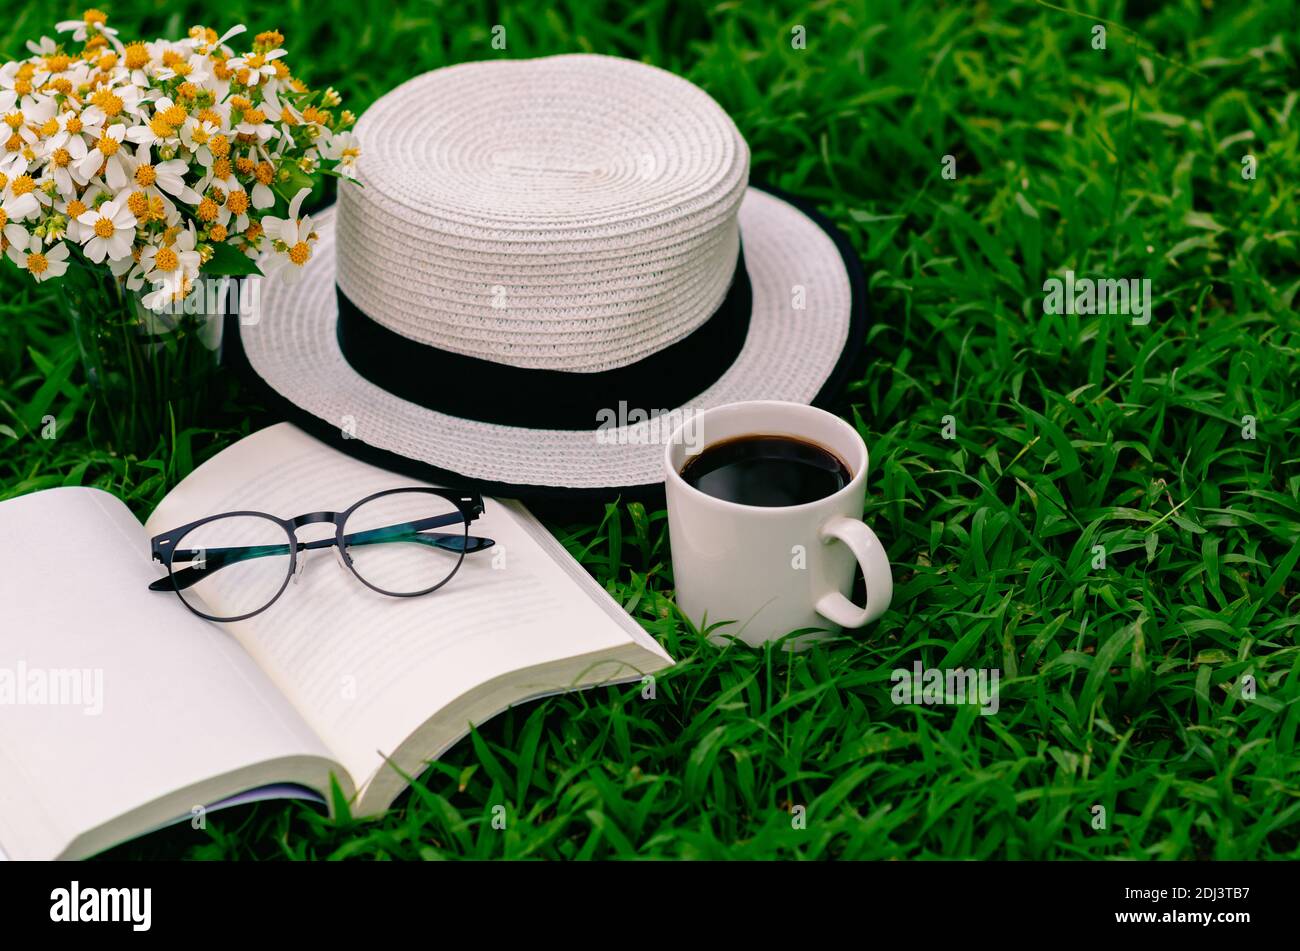 Freizeit am Morgen im Garten mit Kaffee, Buch, Hut und Blumen auf dem Rasen  Stockfotografie - Alamy